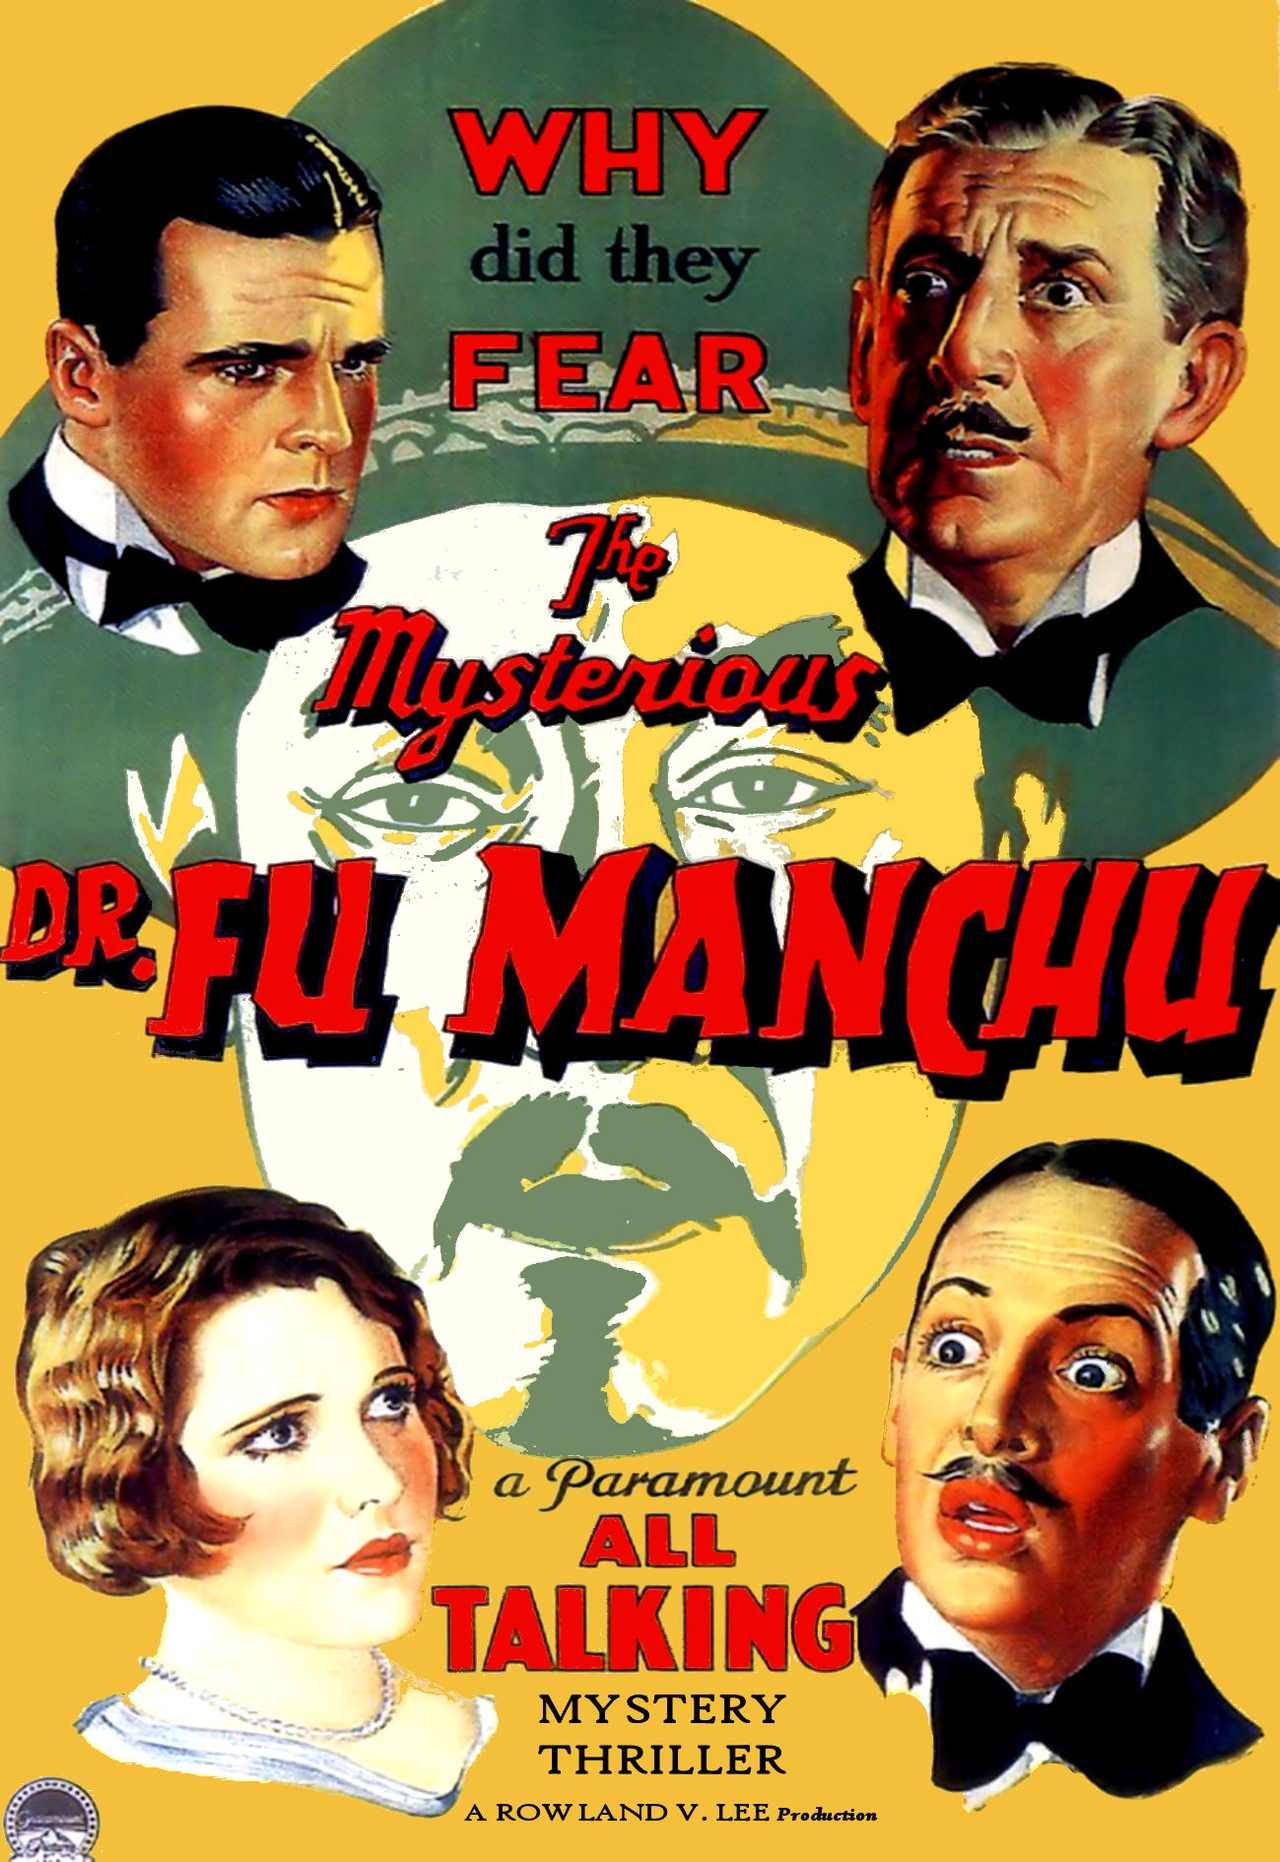  فیلم سینمایی The Mysterious Dr. Fu Manchu با حضور Jean Arthur، Neil Hamilton، وارنر اولاند و William Austin